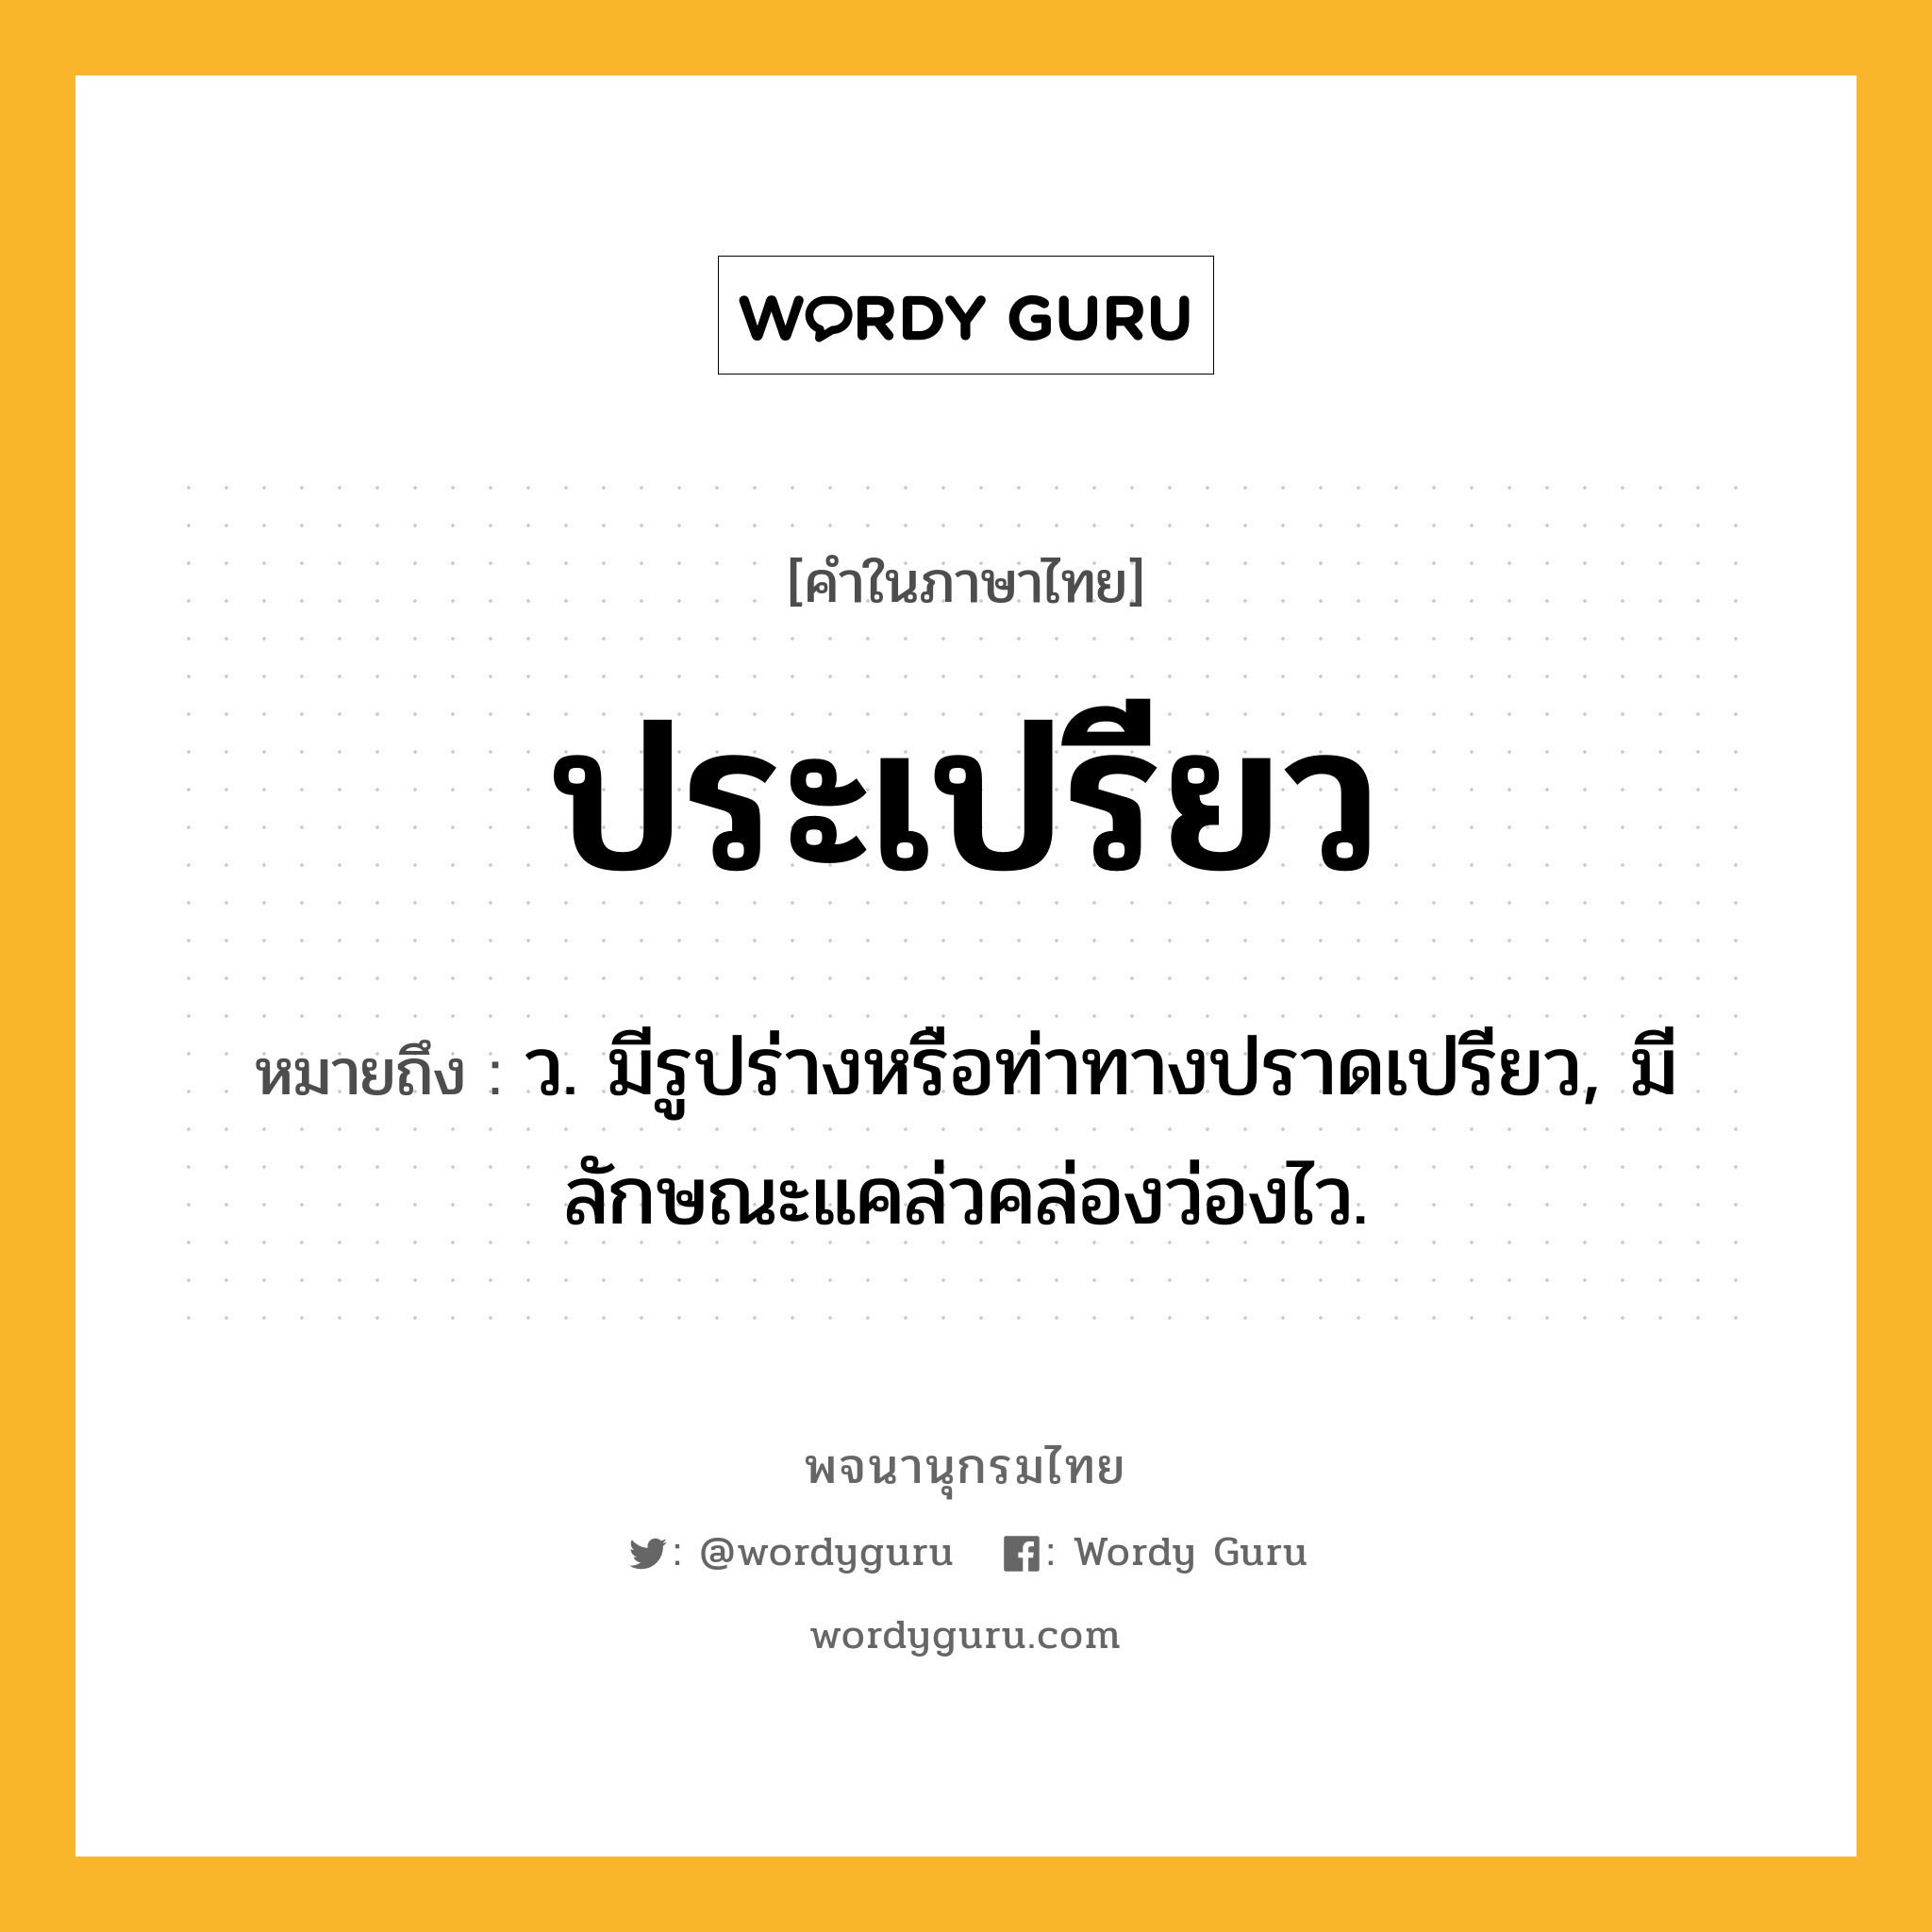 ประเปรียว หมายถึงอะไร?, คำในภาษาไทย ประเปรียว หมายถึง ว. มีรูปร่างหรือท่าทางปราดเปรียว, มีลักษณะแคล่วคล่องว่องไว.